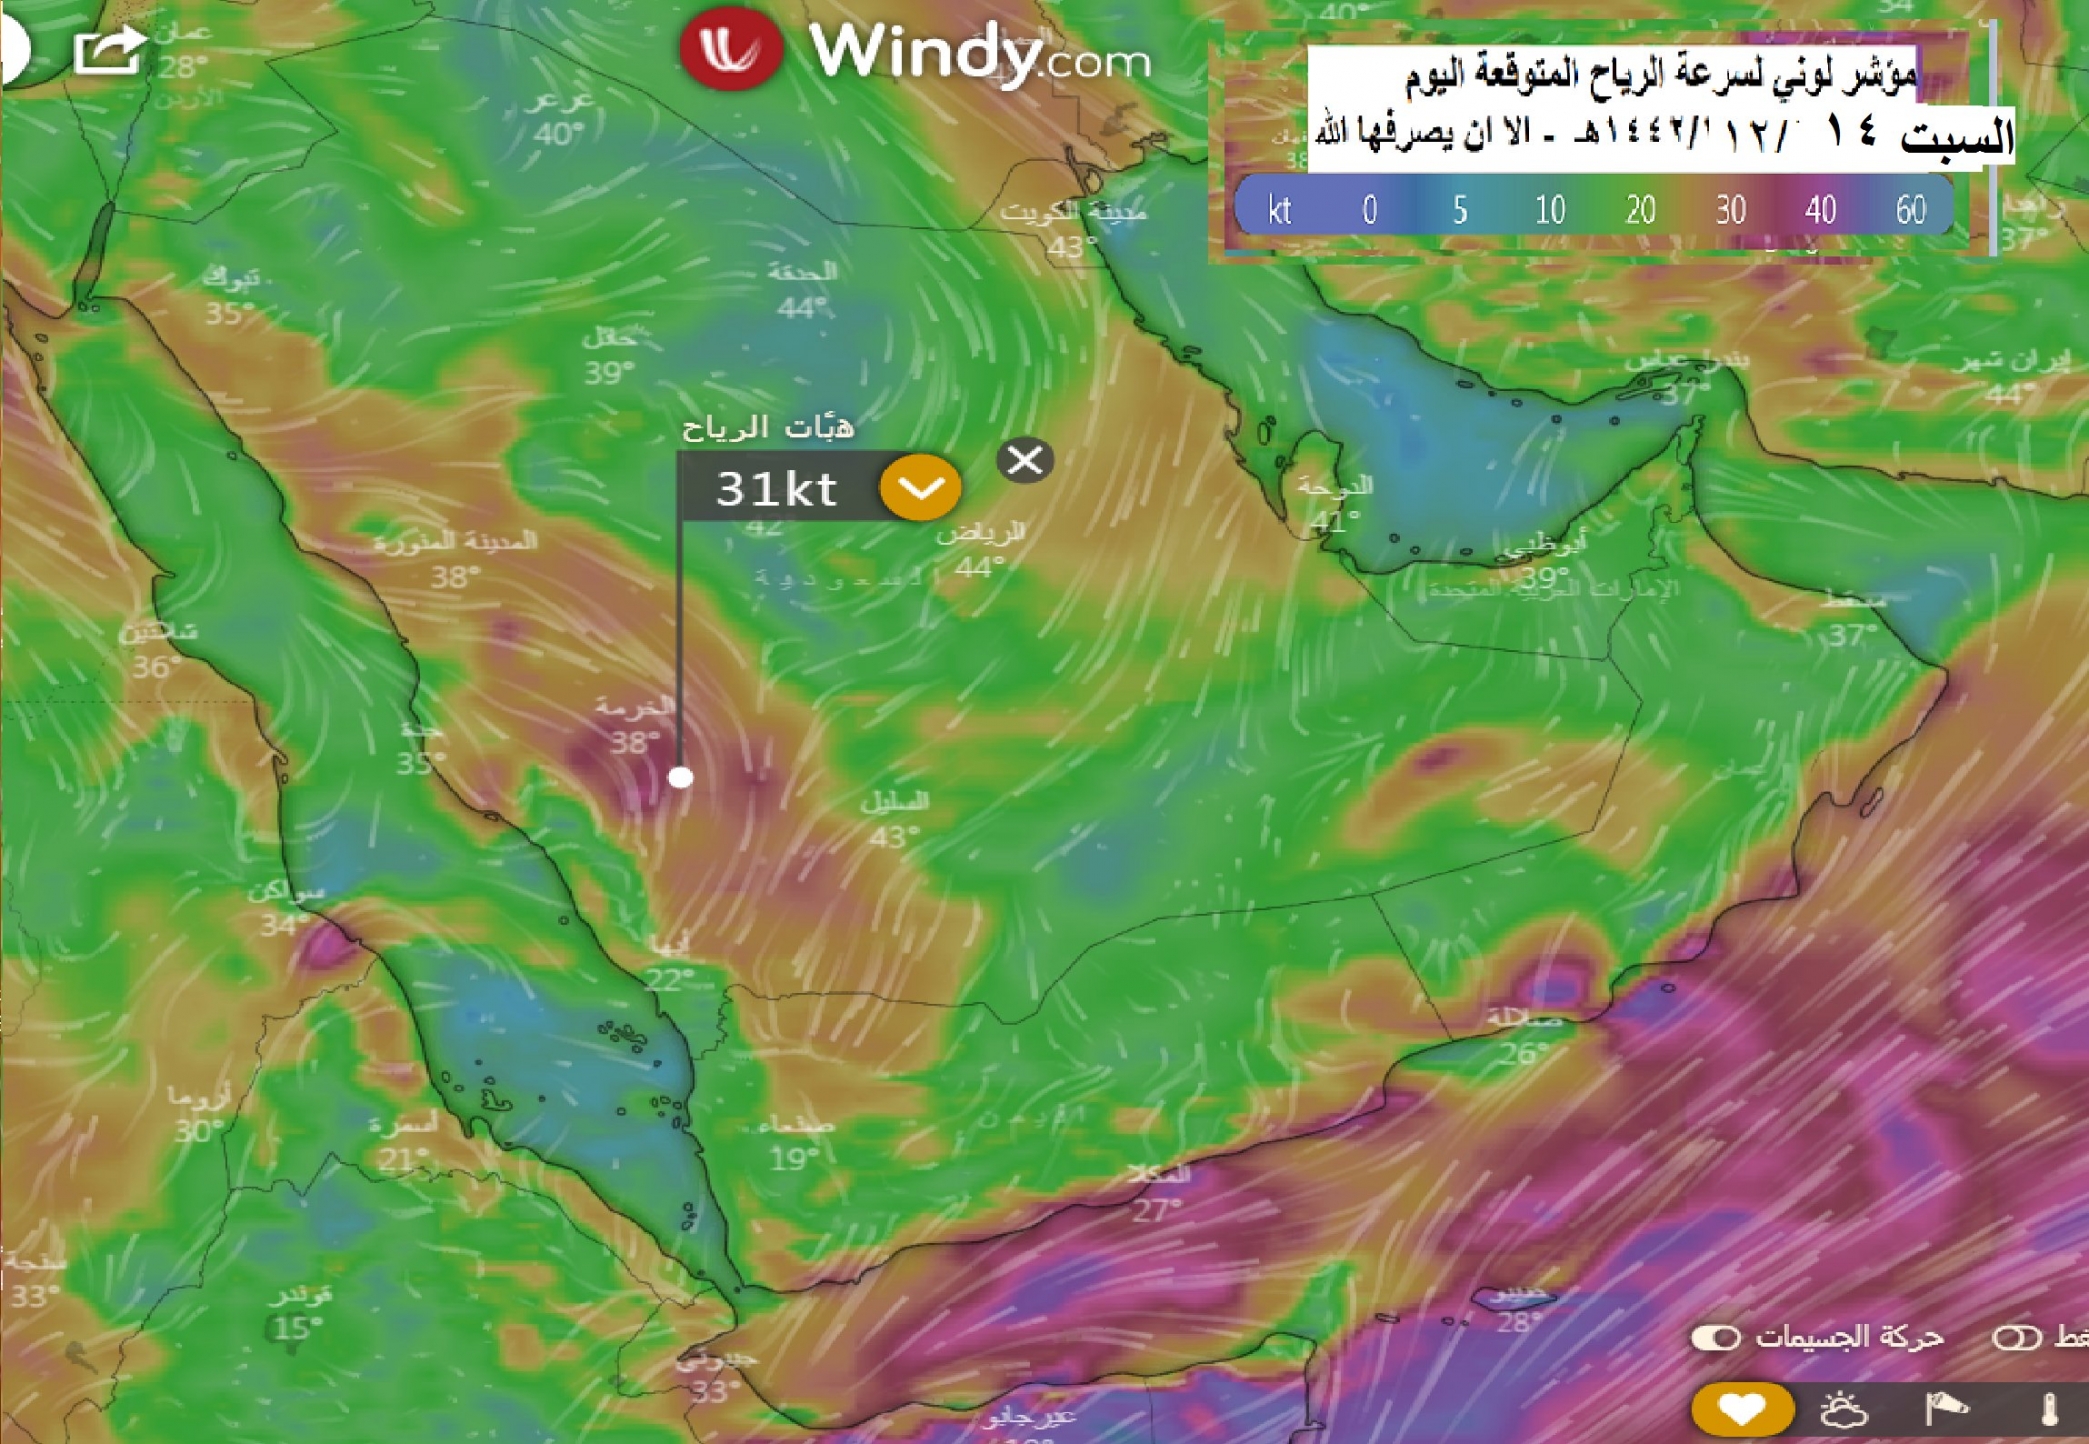 الحصيني : 7 مناطق تتأثر بشدة حالة تروية من السبت حتى الاثنين